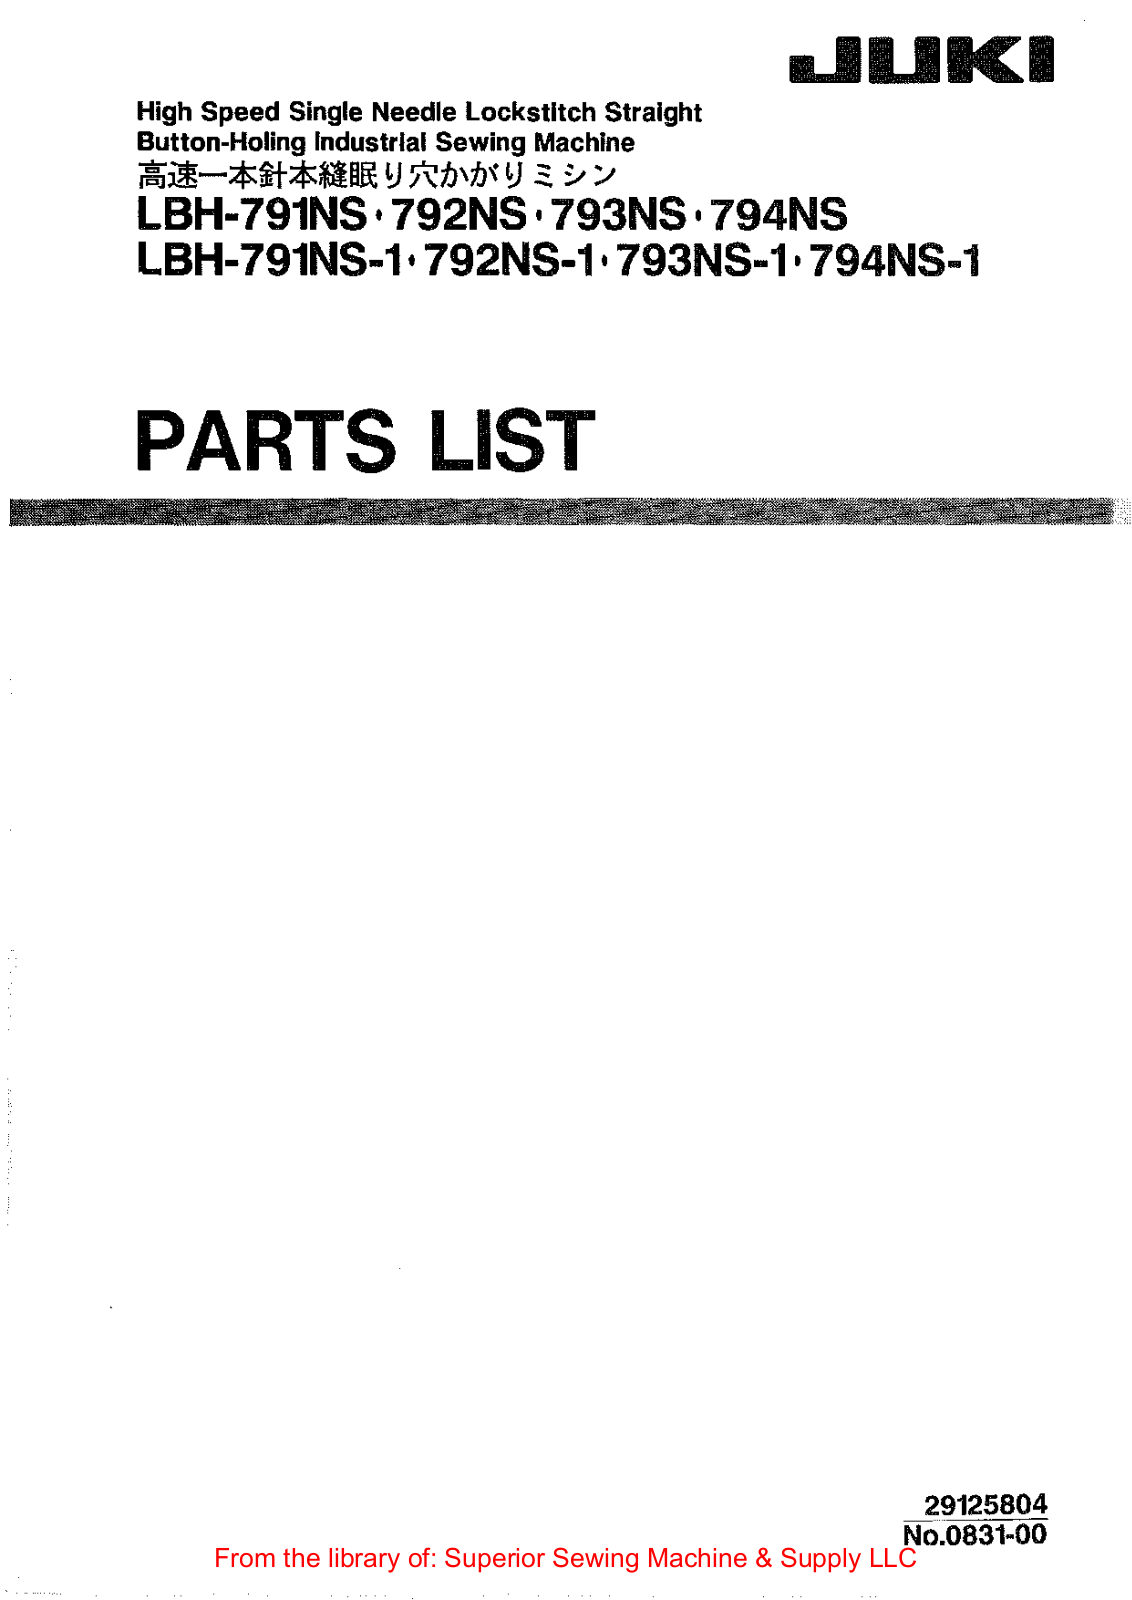 Juki LBH-791NS, LBH-792NS, LBH-793NS, LBH-794NS, LBH-791NS-1 Manual